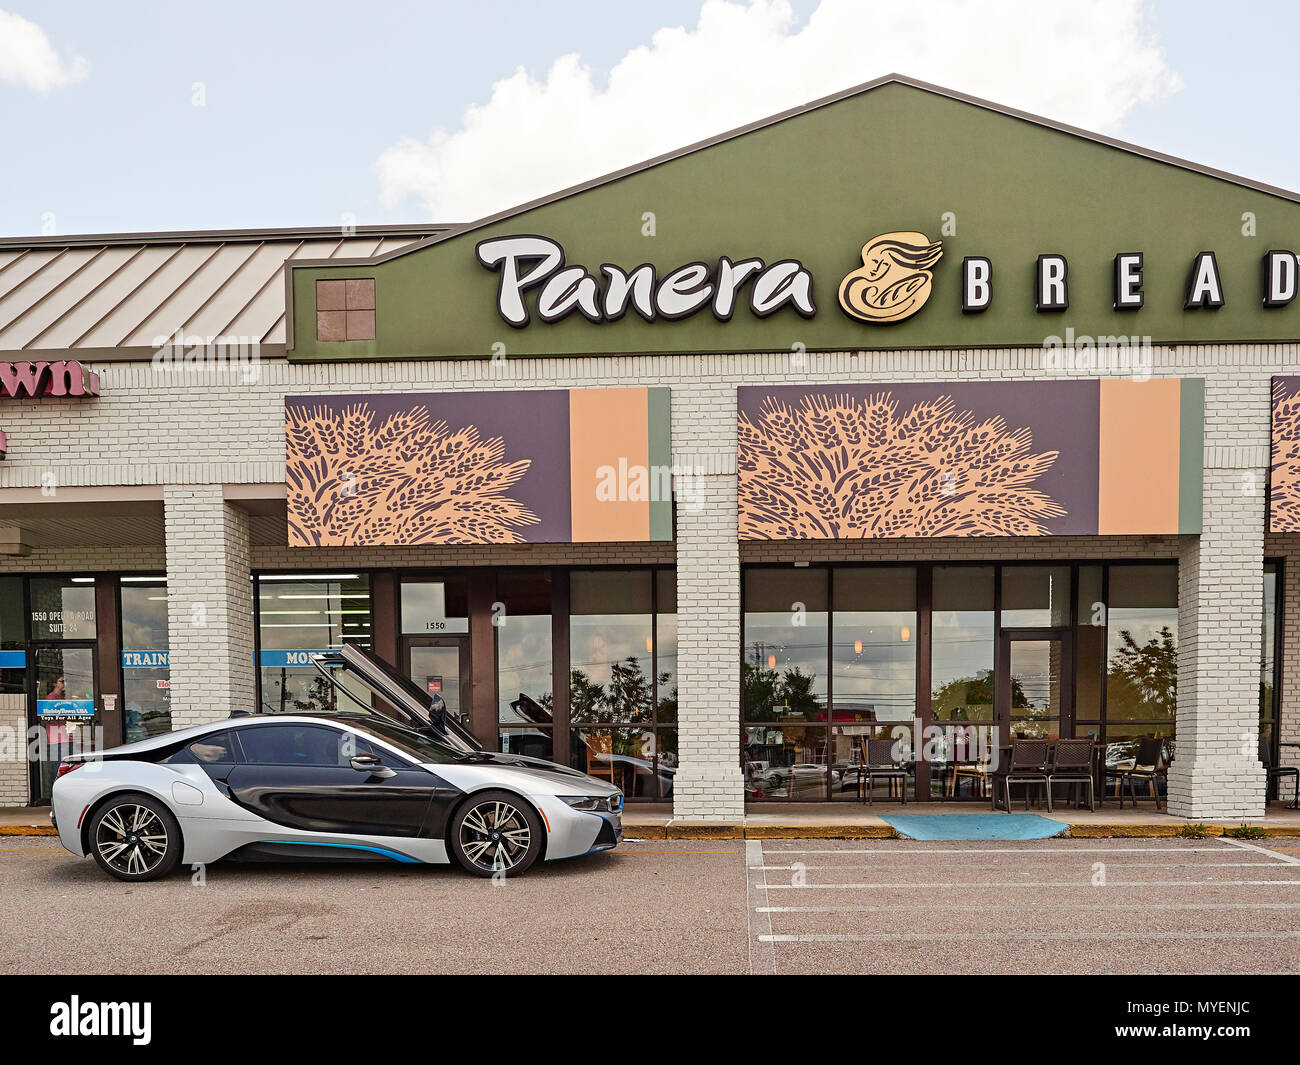 La BMW i8 hybride électrique de luxe super plug-in voiture garée en face de Panera Bread de Opelika Alabama, Etats-Unis. Banque D'Images